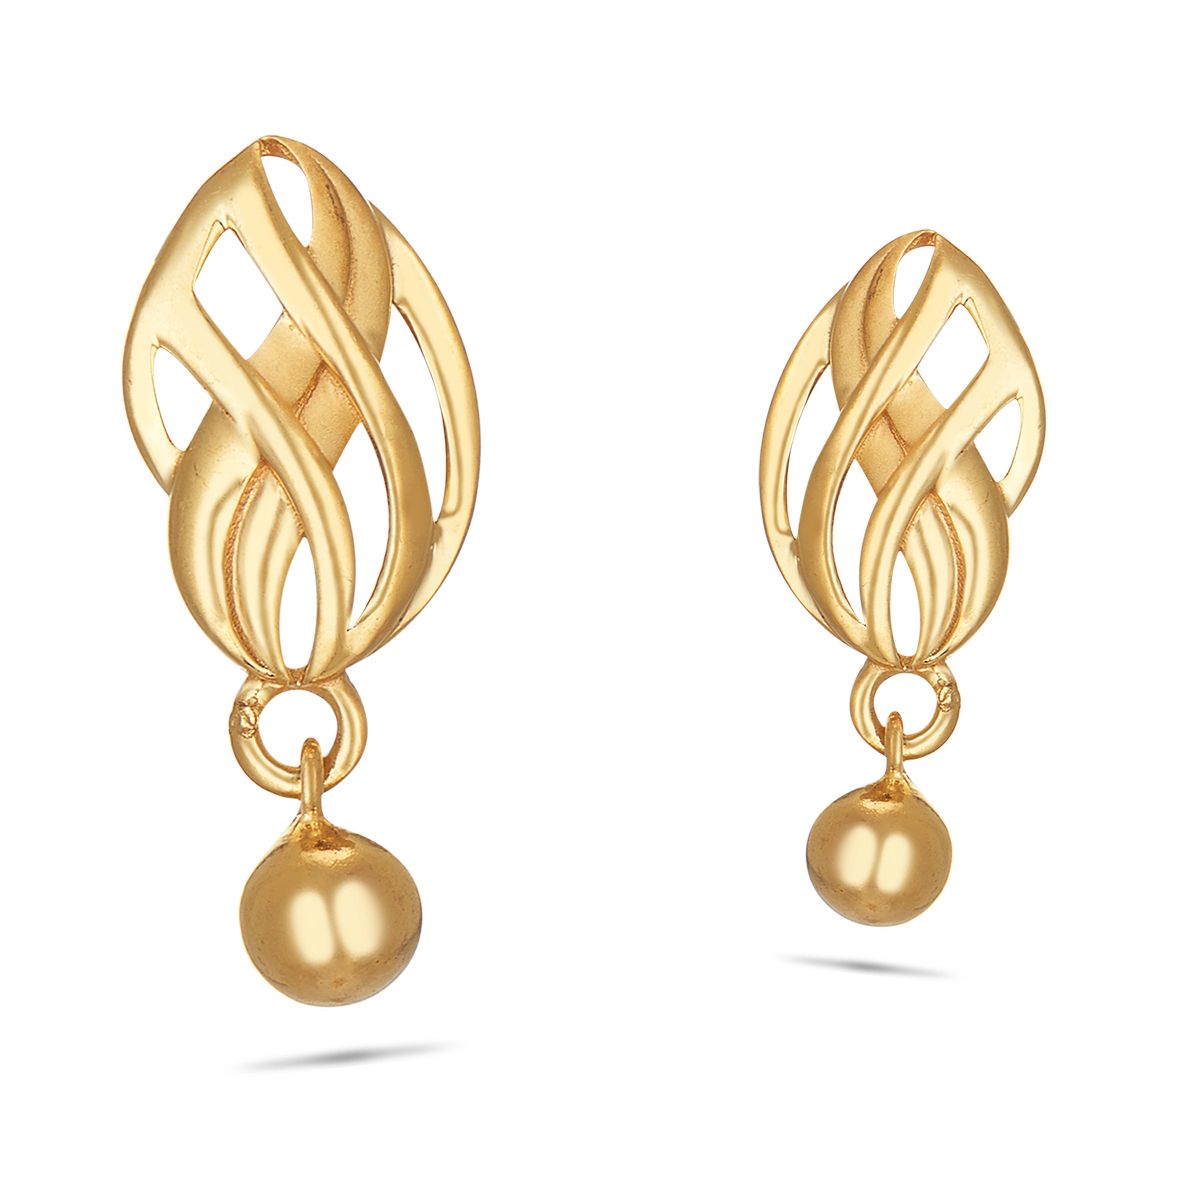 Buy Gold Earrings Online  Gold Earrings Online